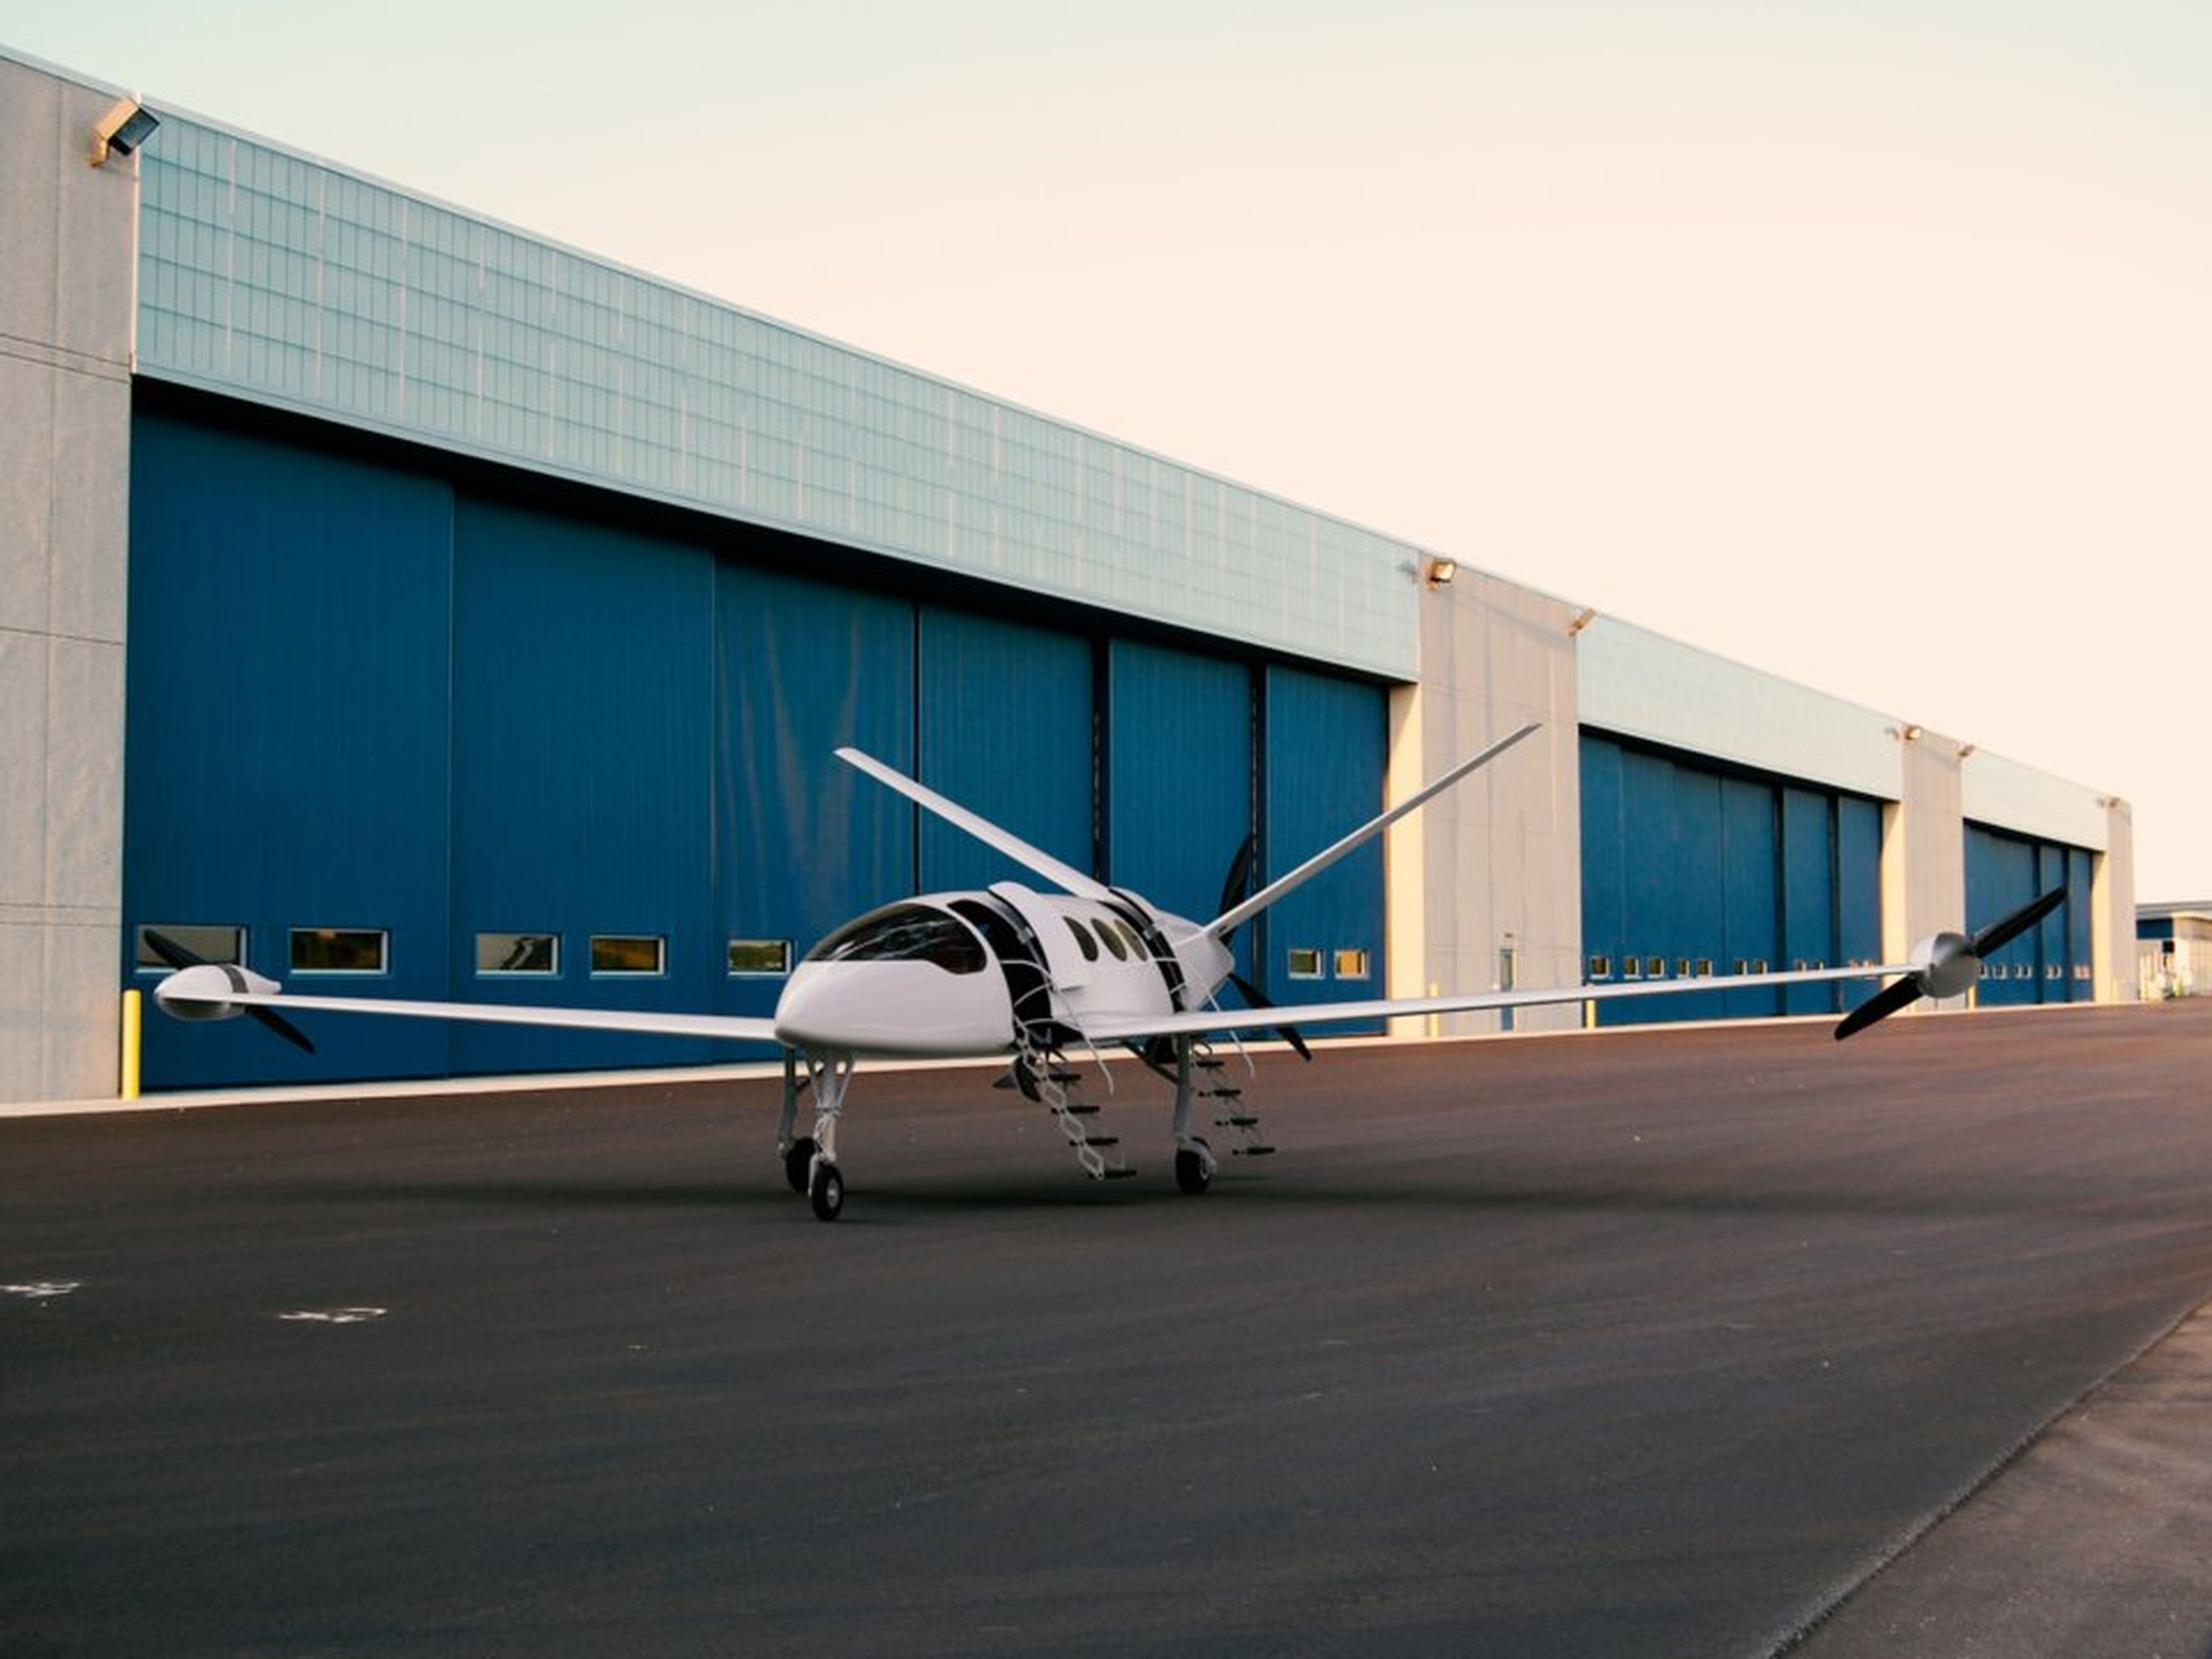 Eviation comenzó a construir el avión eléctrico Alice Commuter en 2017.